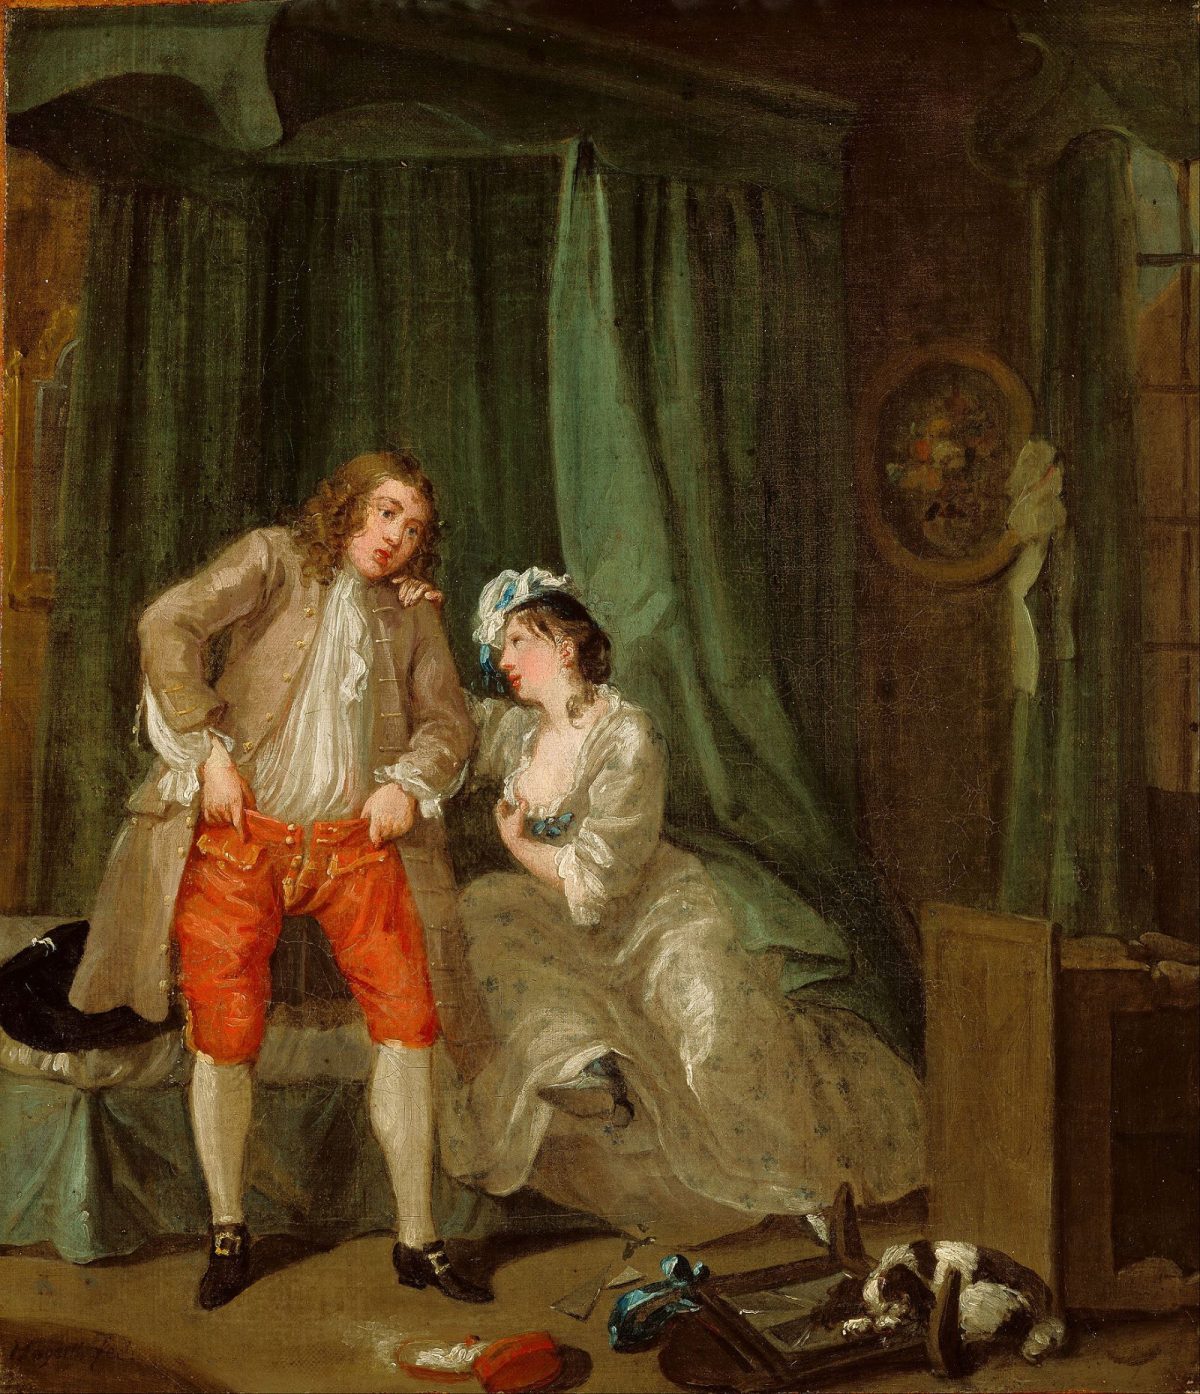 William Hogarth, art, painting, satire, 1700s